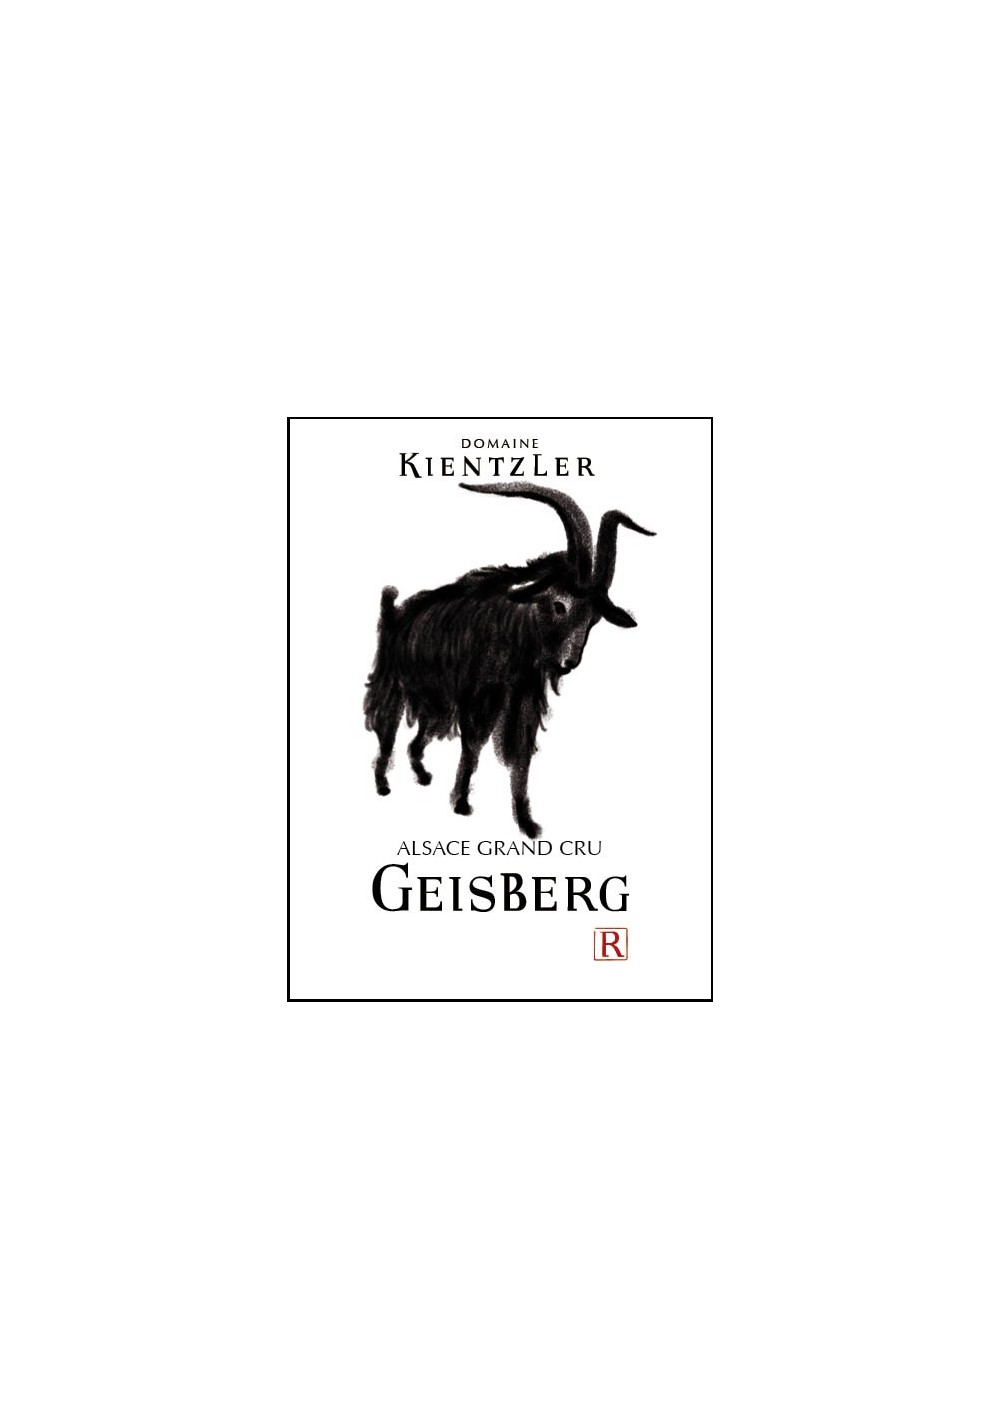 RIESLING GRAND CRU GEISBERG 2017 - 2